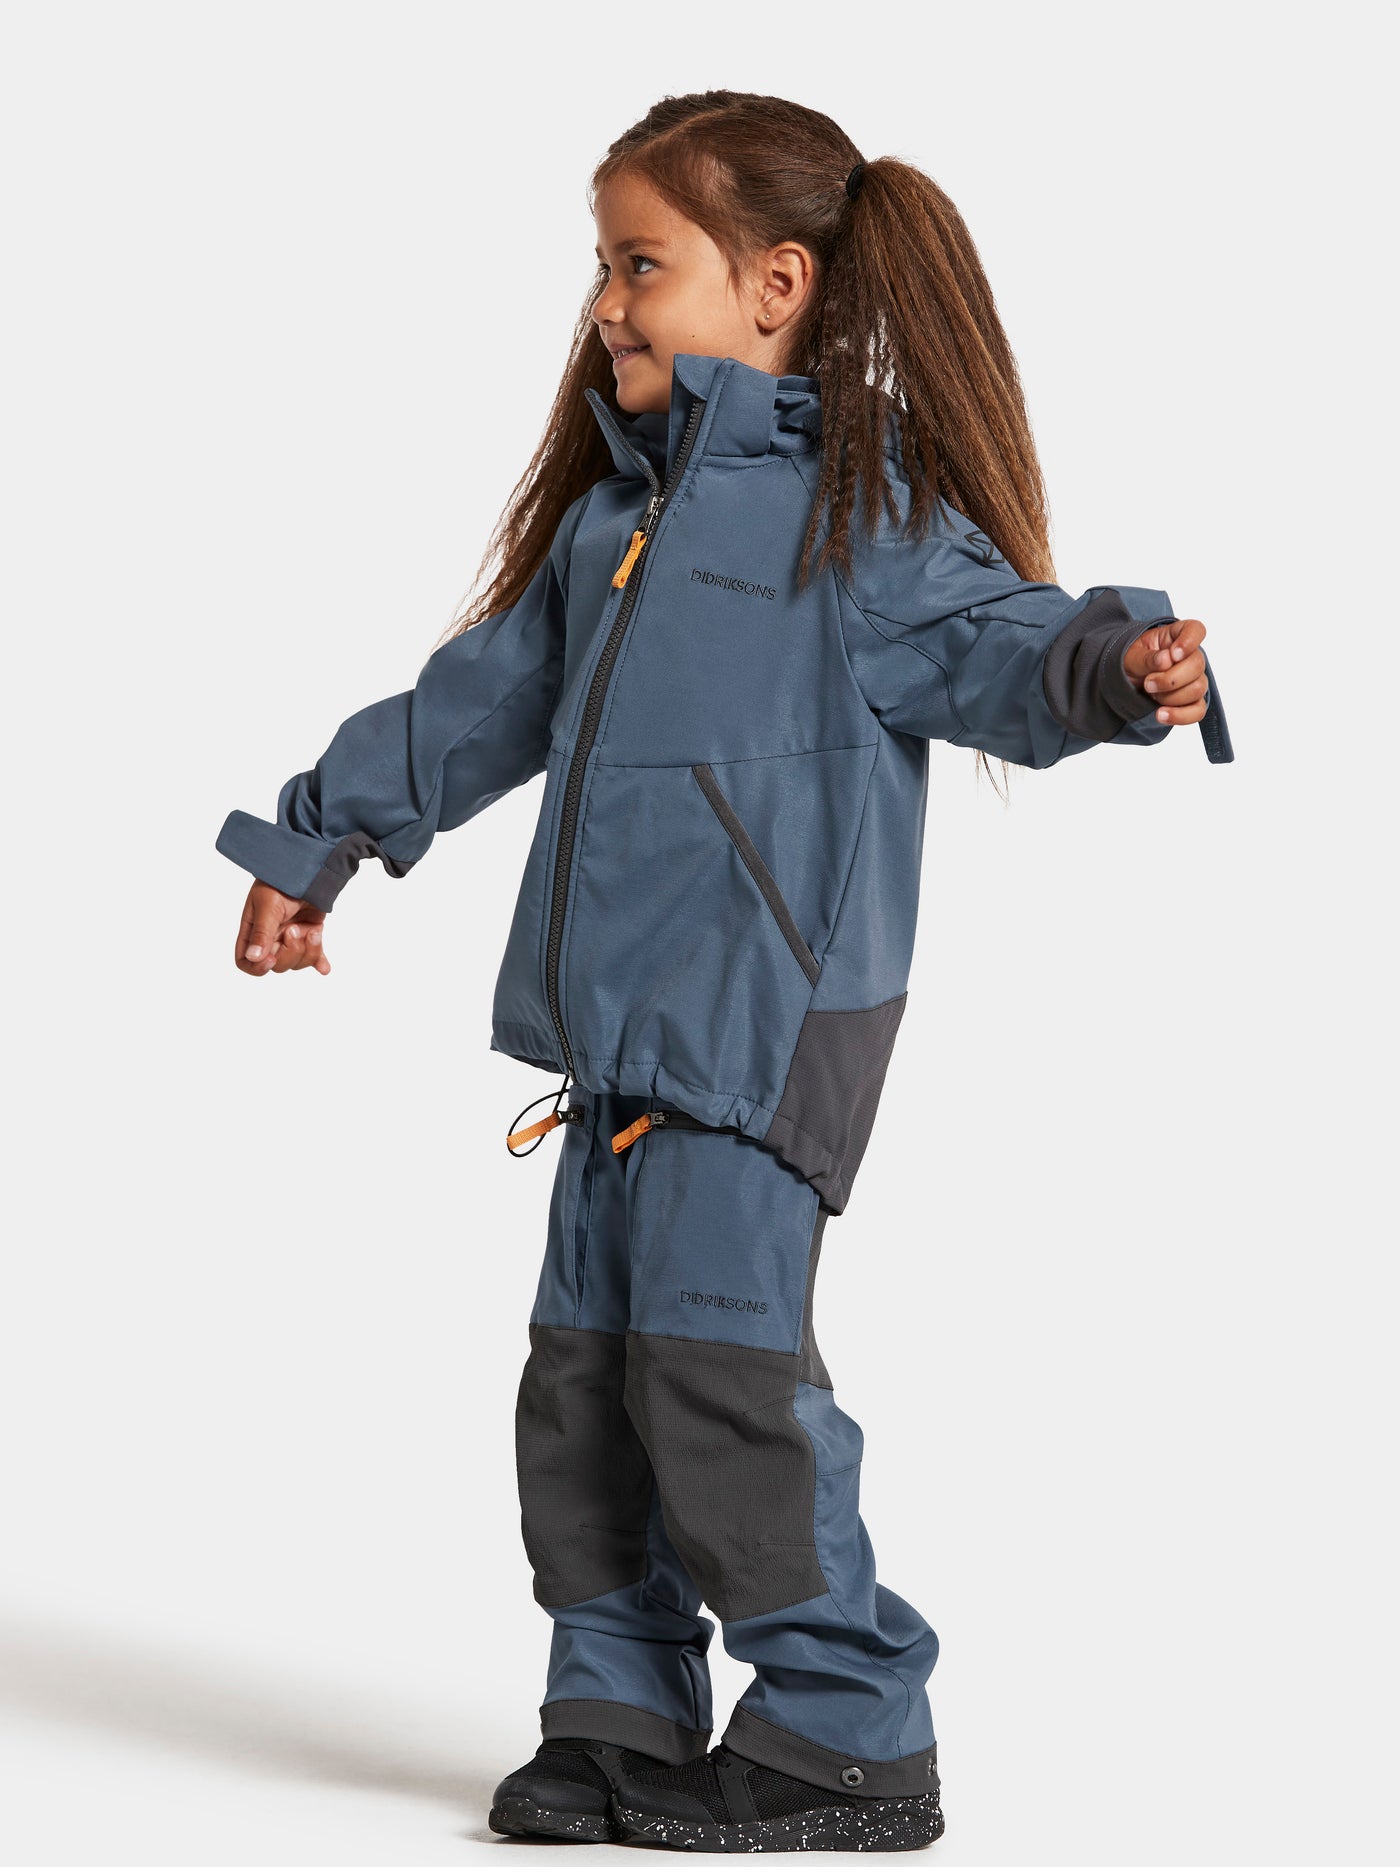 Didriksonsin Stigen lasten sininen takki tytön päällä sivusta kuvattuna